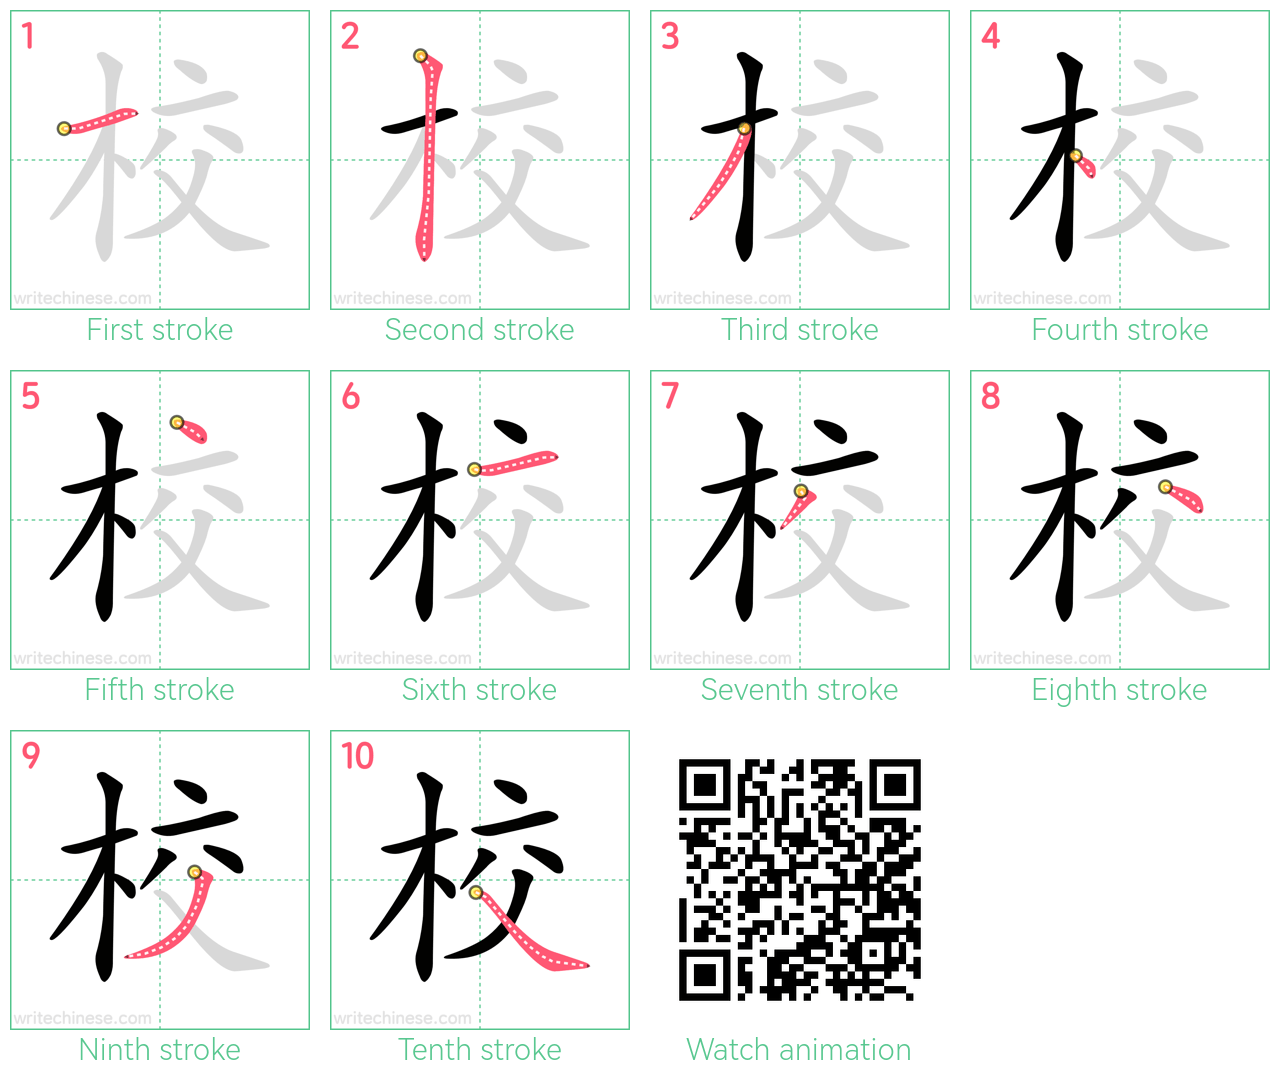 校 step-by-step stroke order diagrams